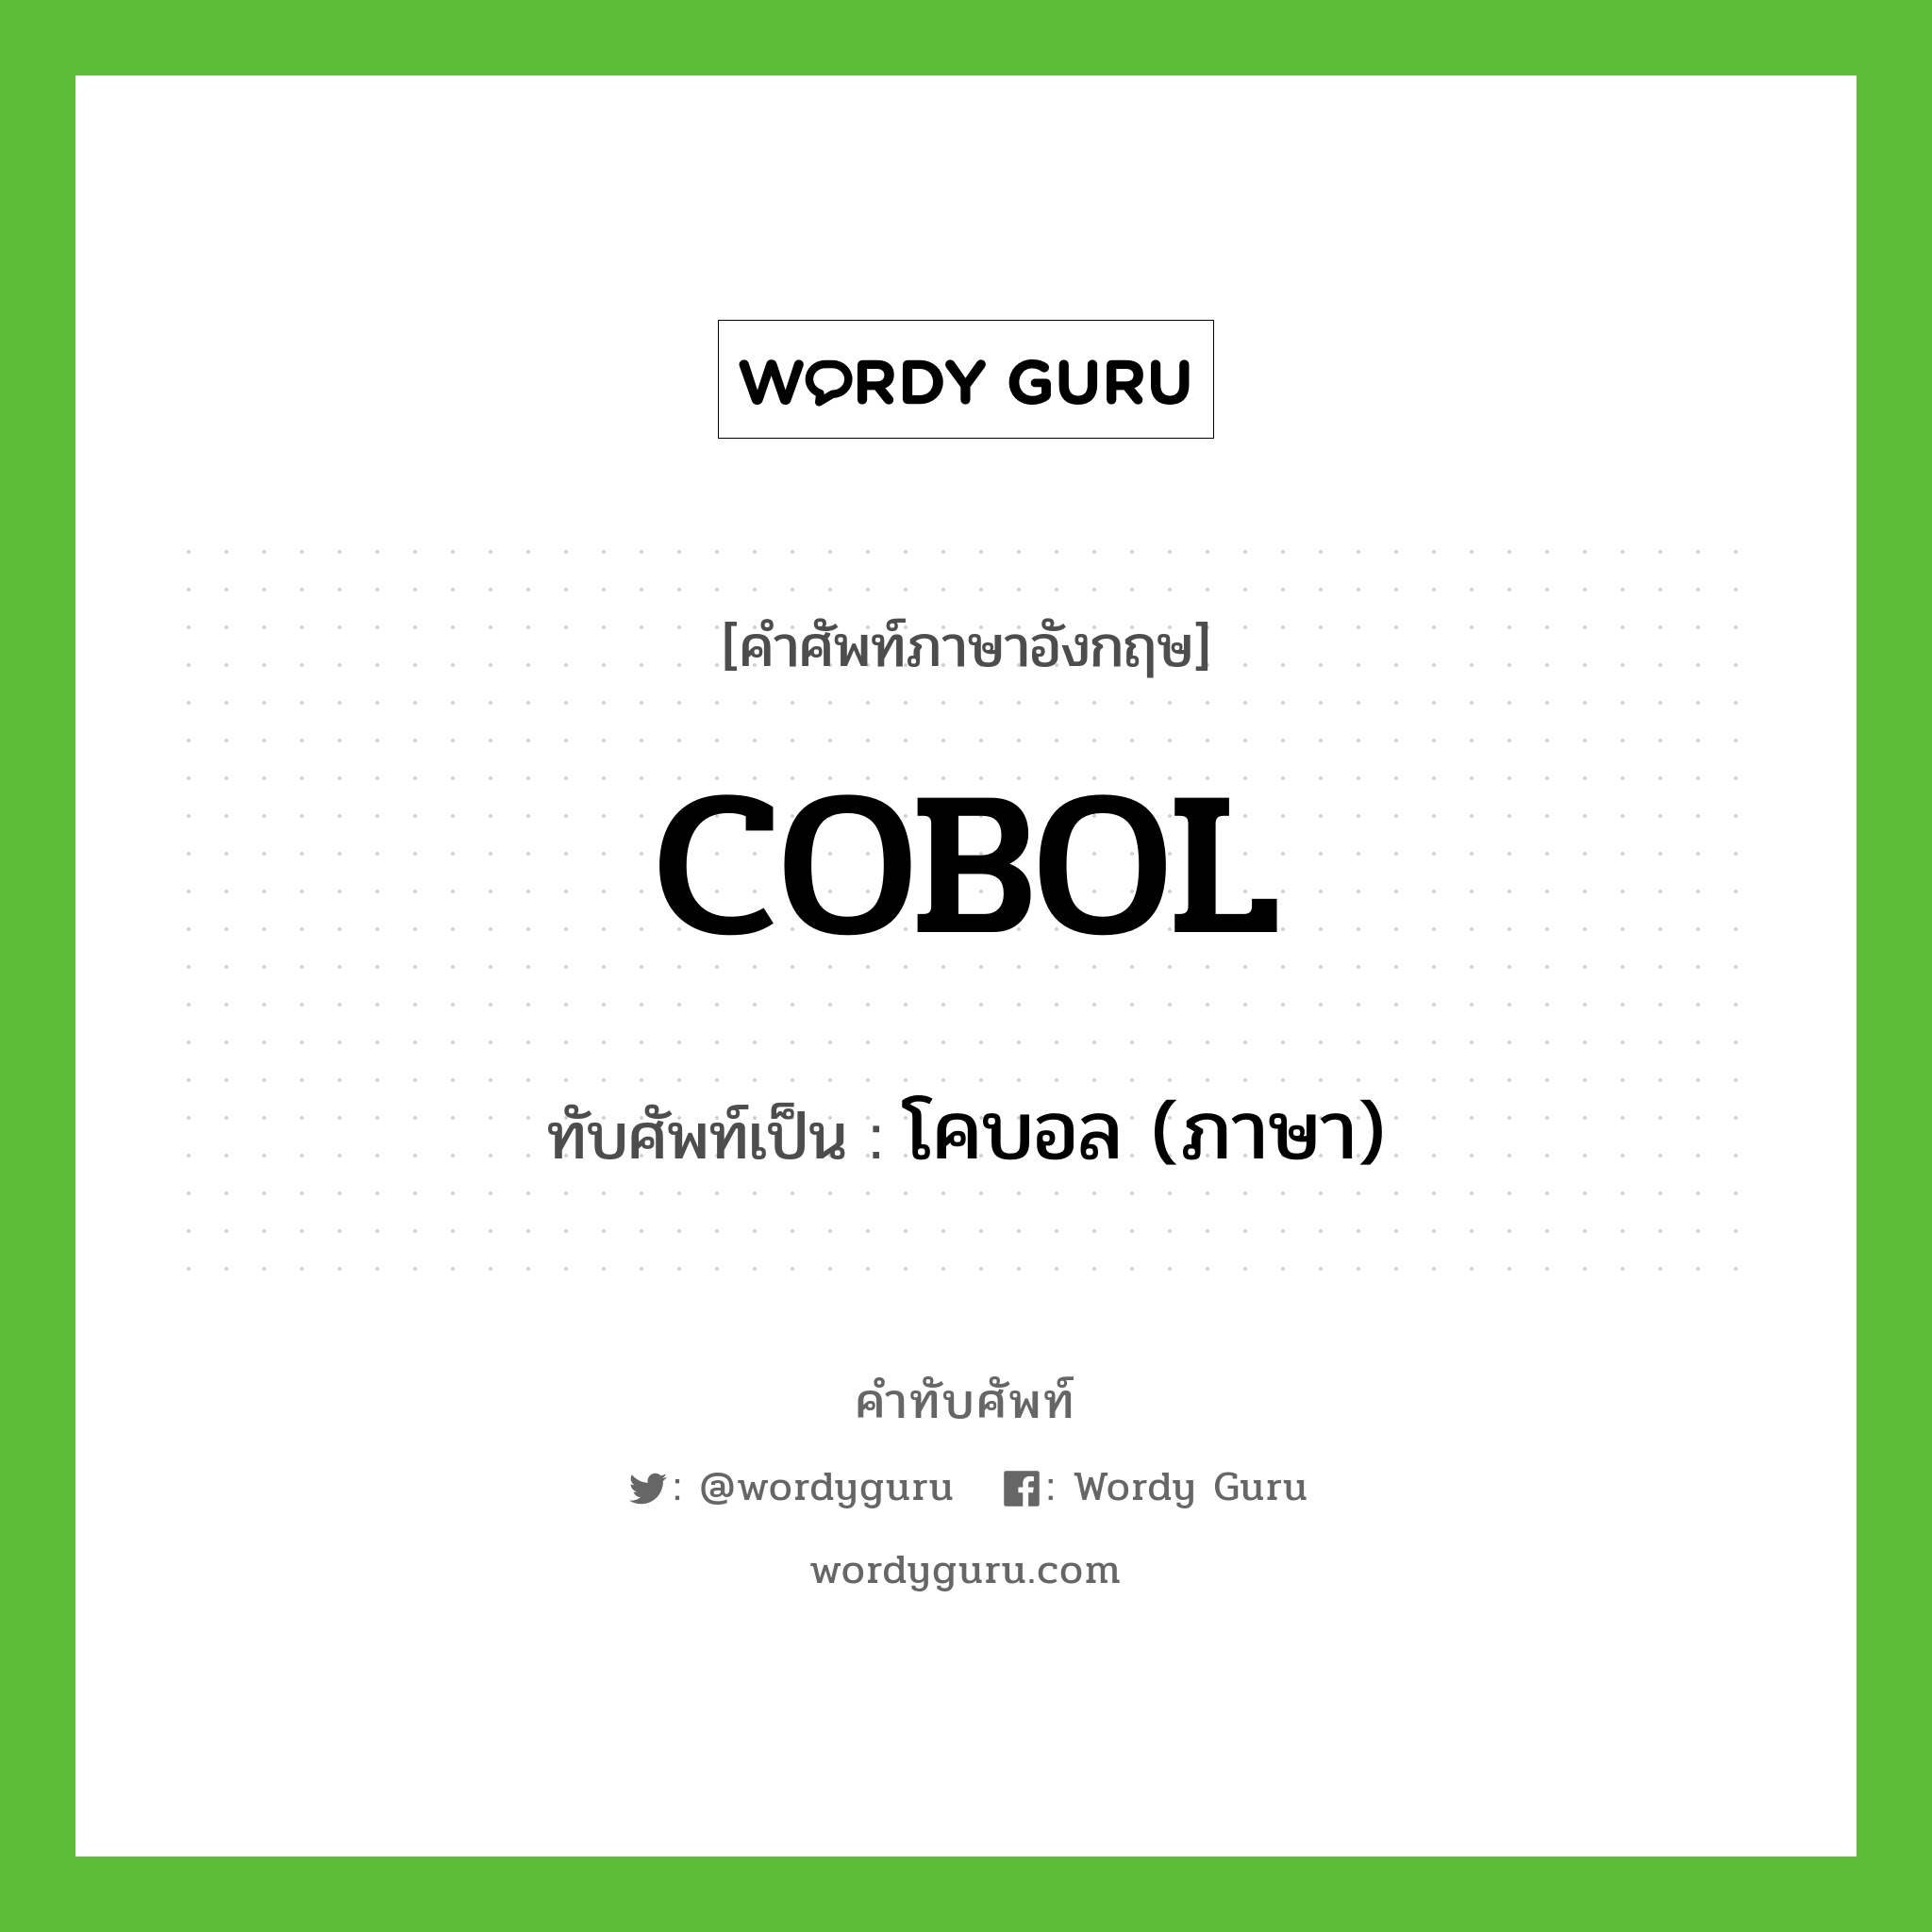 โคบอล (ภาษา) เขียนอย่างไร?, คำศัพท์ภาษาอังกฤษ โคบอล (ภาษา) ทับศัพท์เป็น COBOL